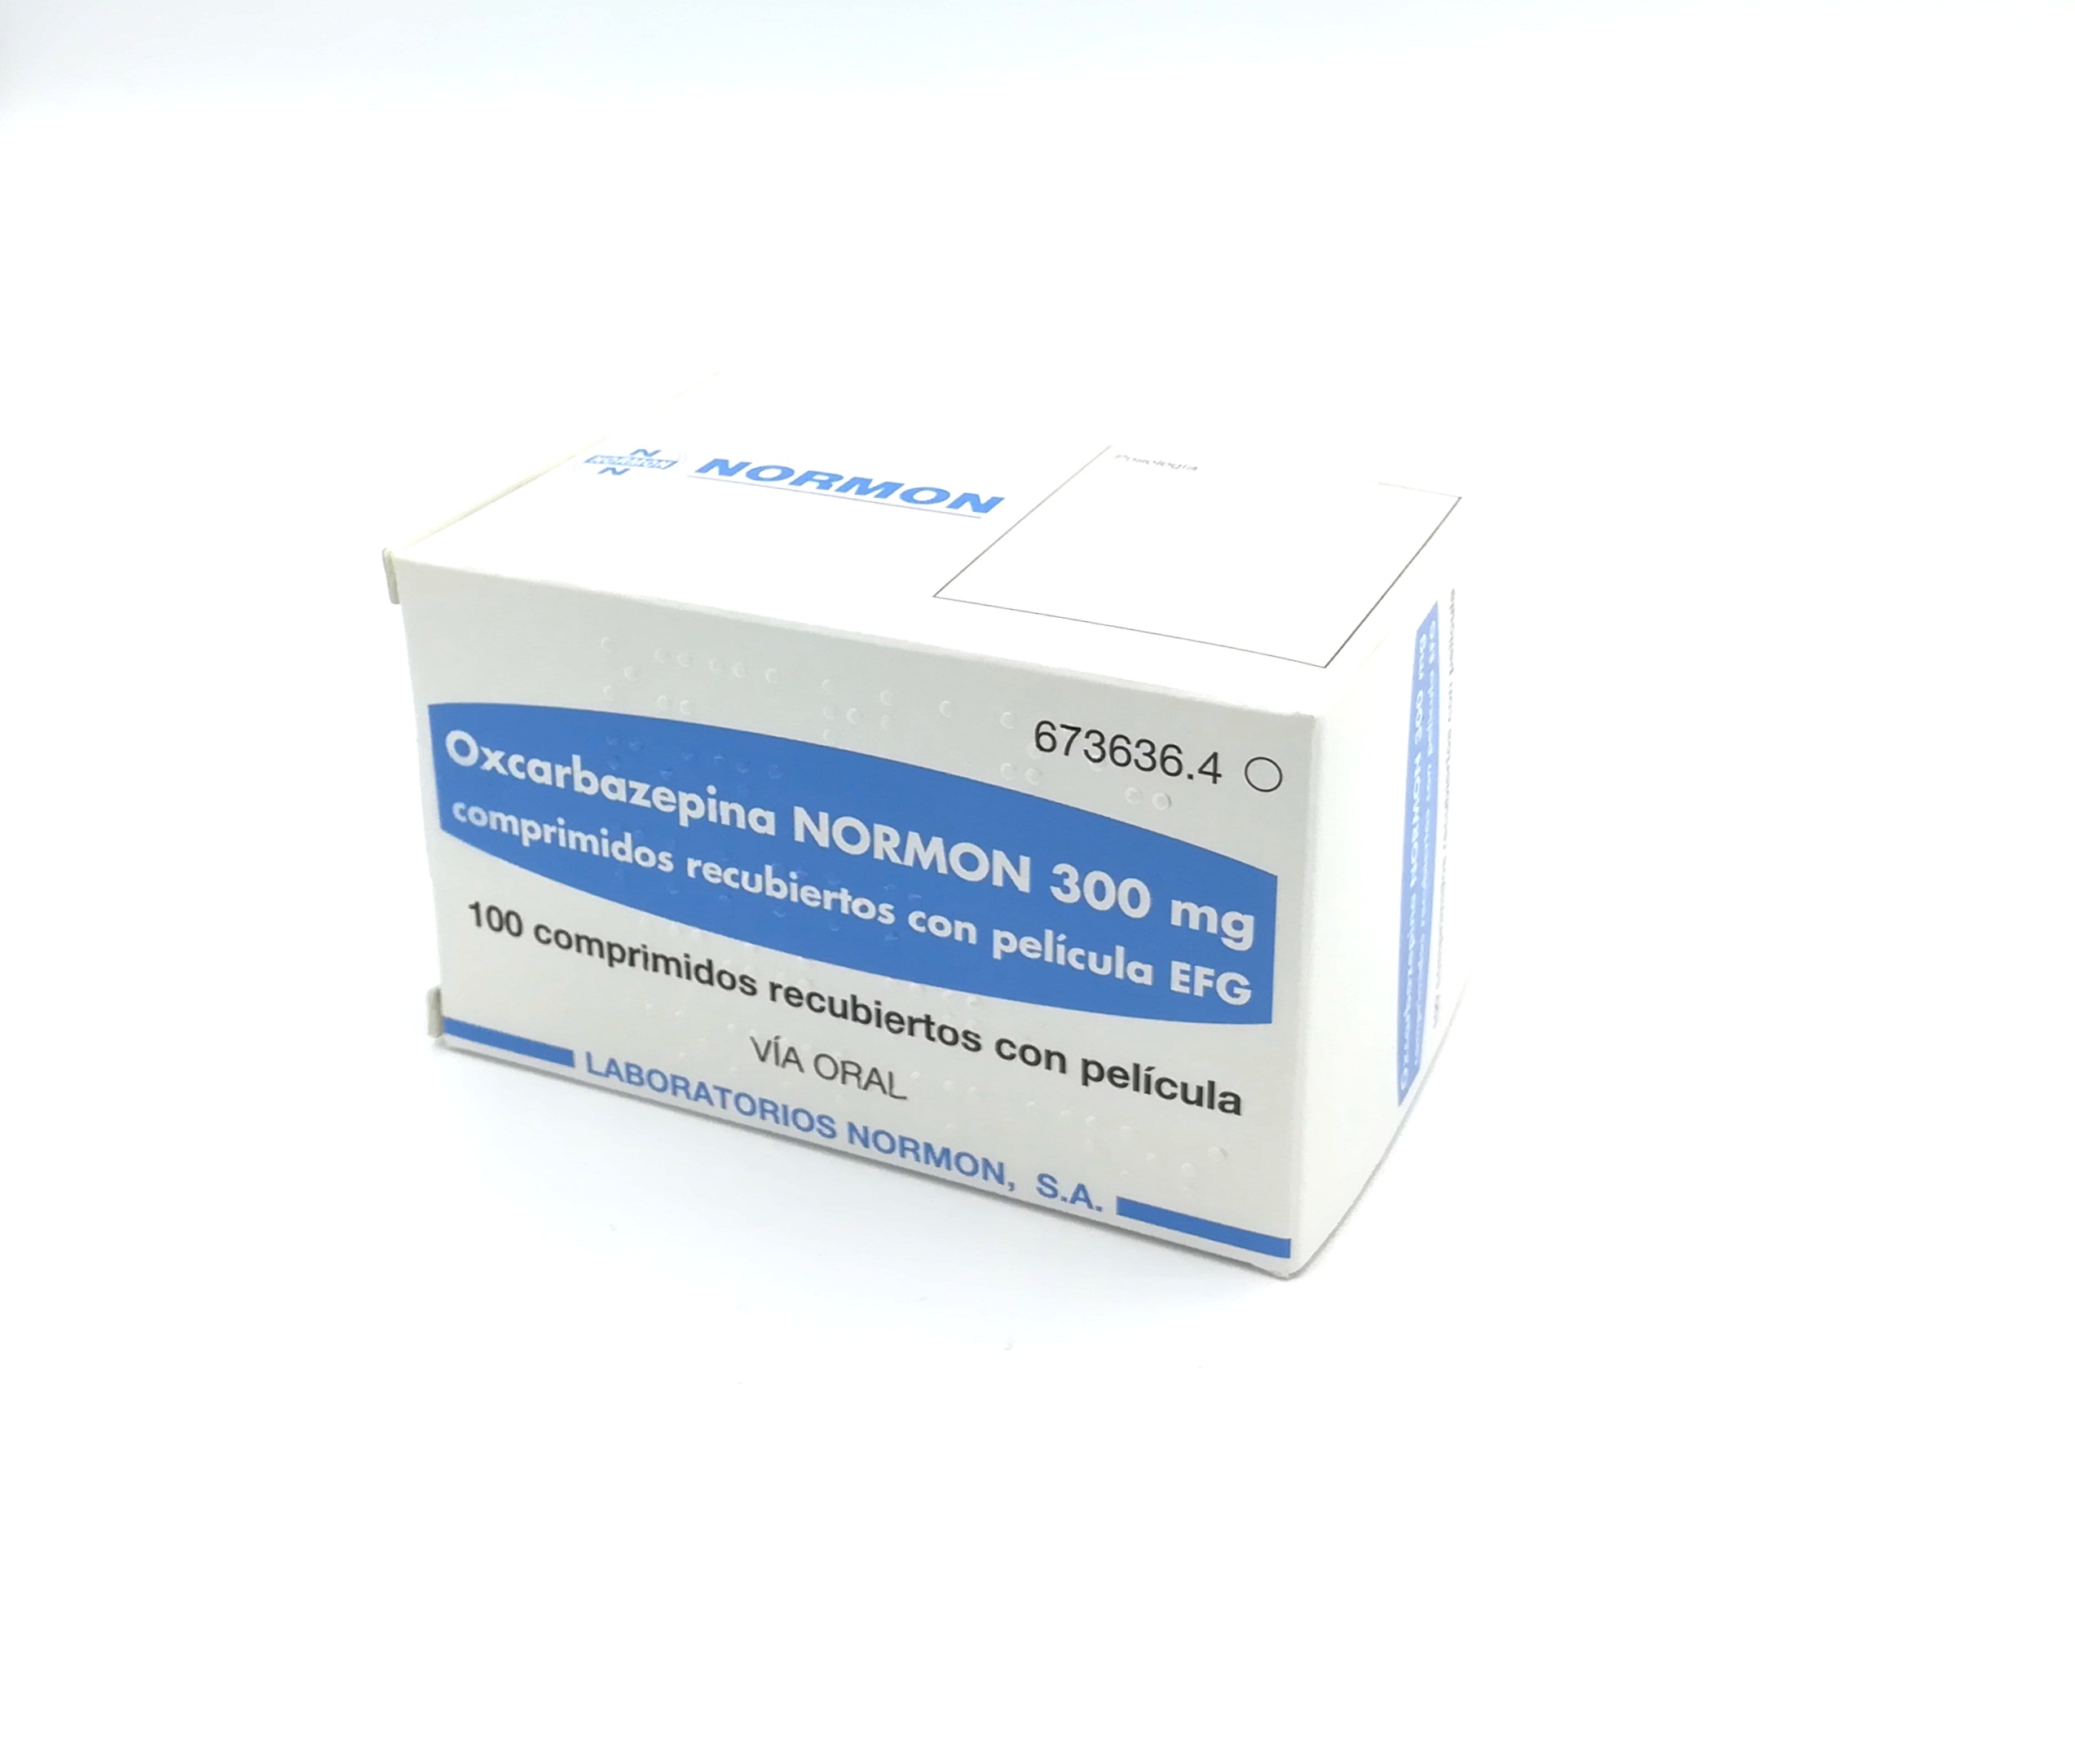 OXCARBAZEPINA NORMON EFG 300 mg 100 COMPRIMIDOS RECUBIERTOS